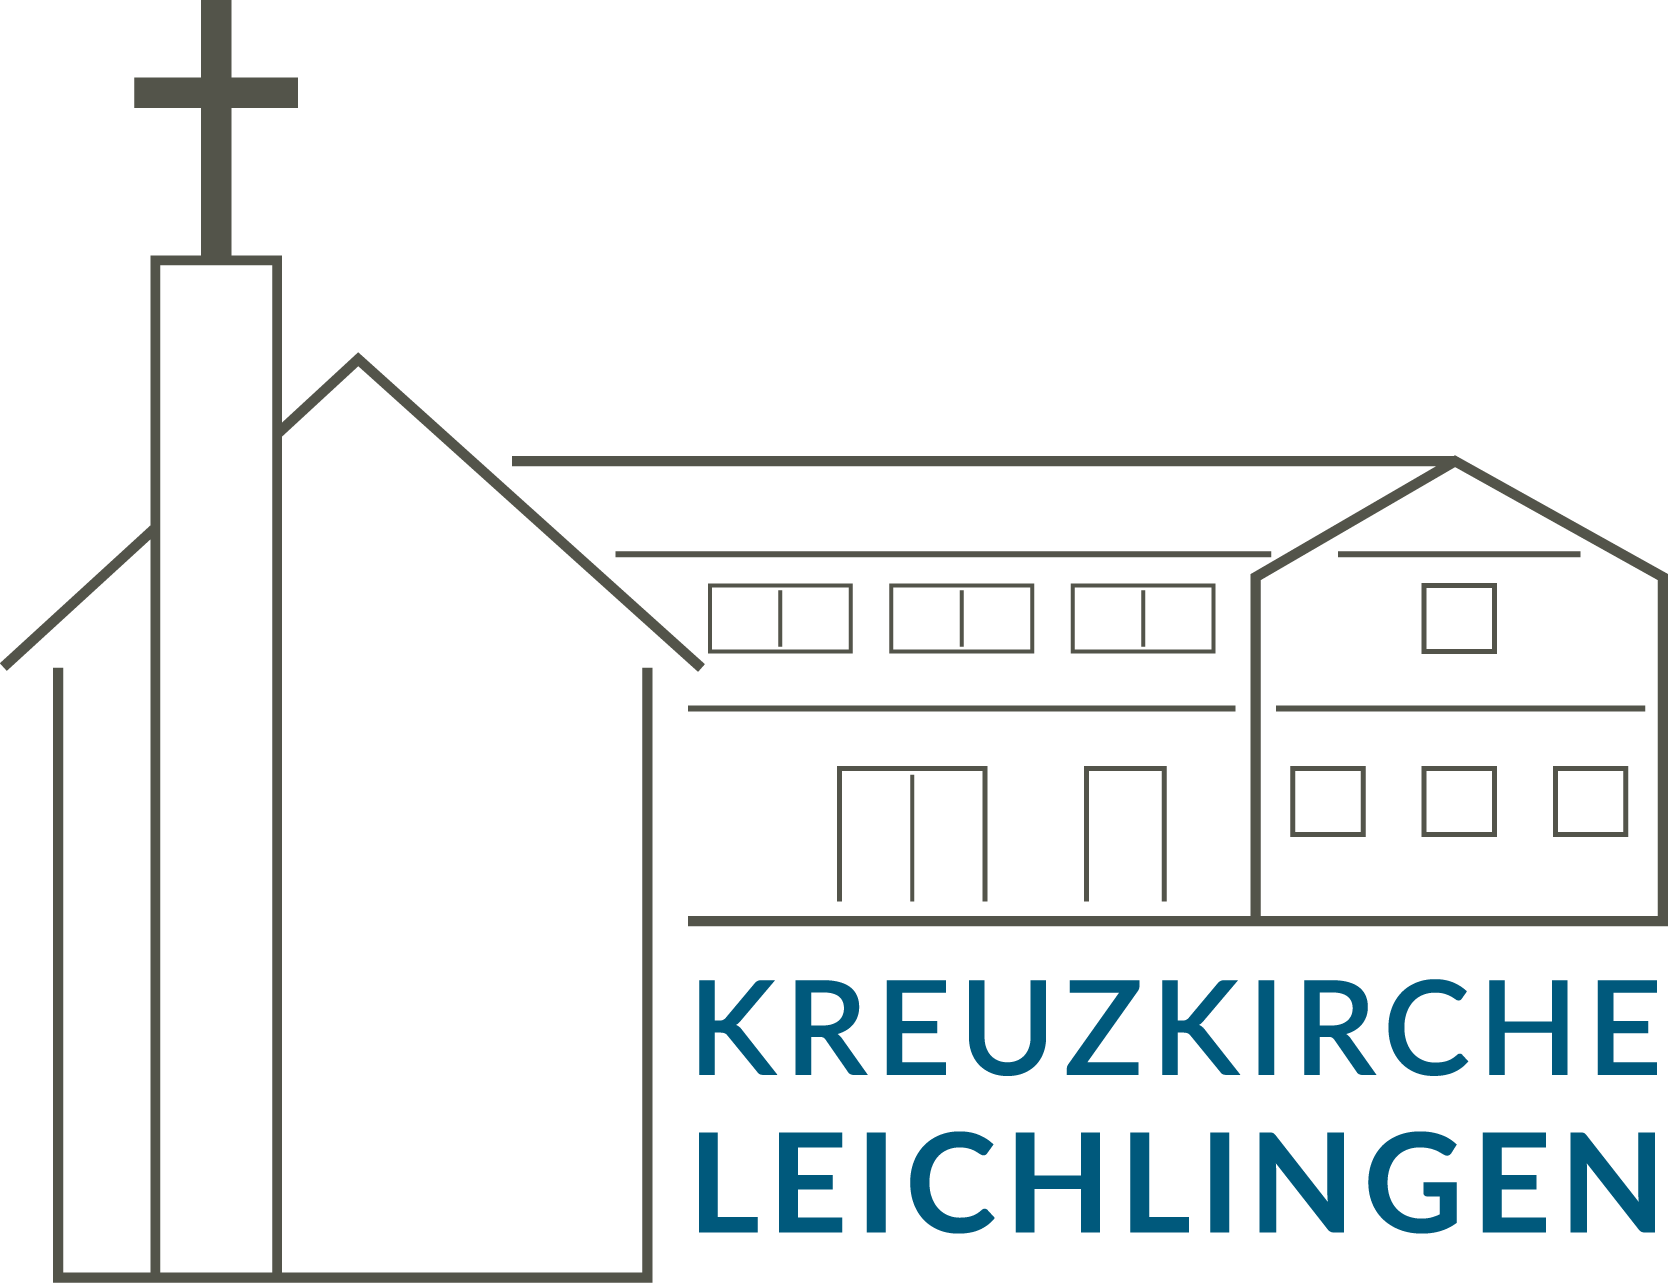 Evangelisch-Freikirchliche Gemeinde Leichlingen, Kreuzkirche